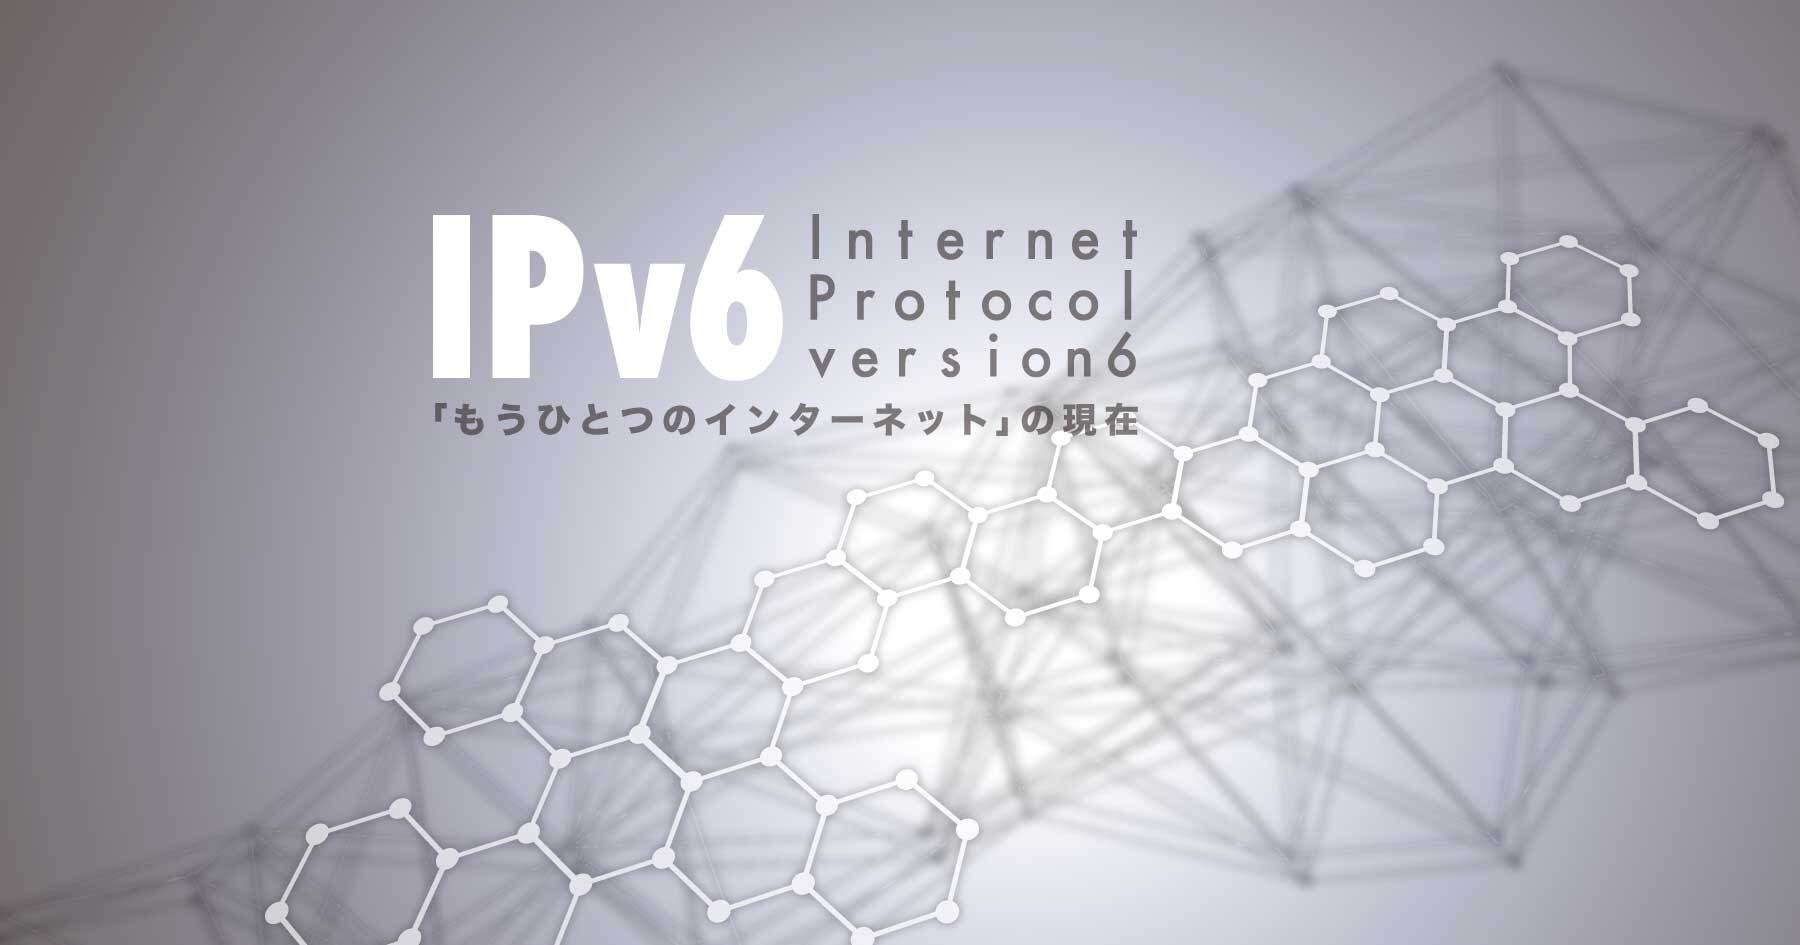 今そこにあるIPv6 ─ もう1つのインターネットが普通に使われていることに普通のITエンジニアはどう対応するべきか？